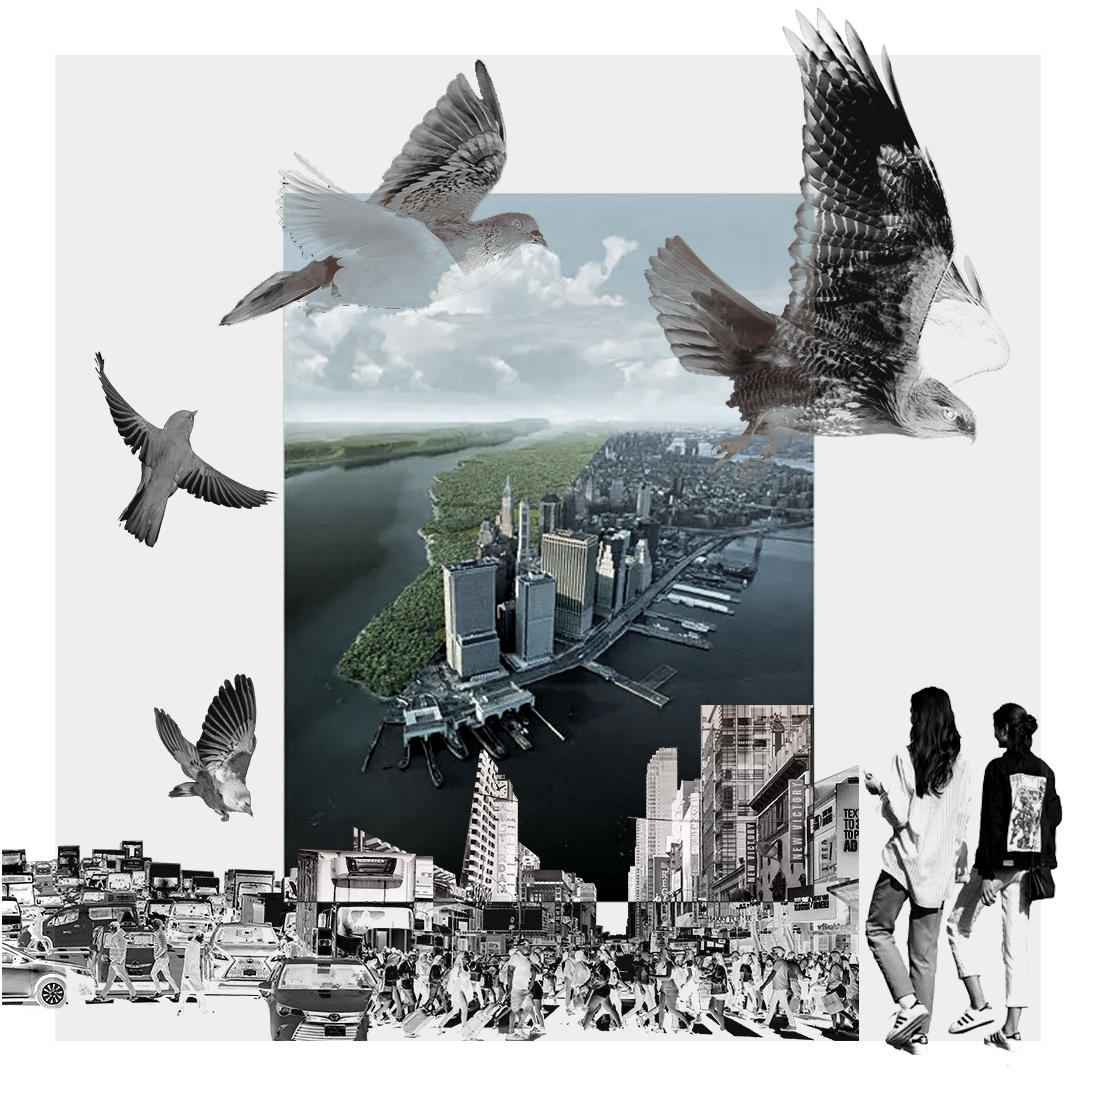 Human & Birds in Cities